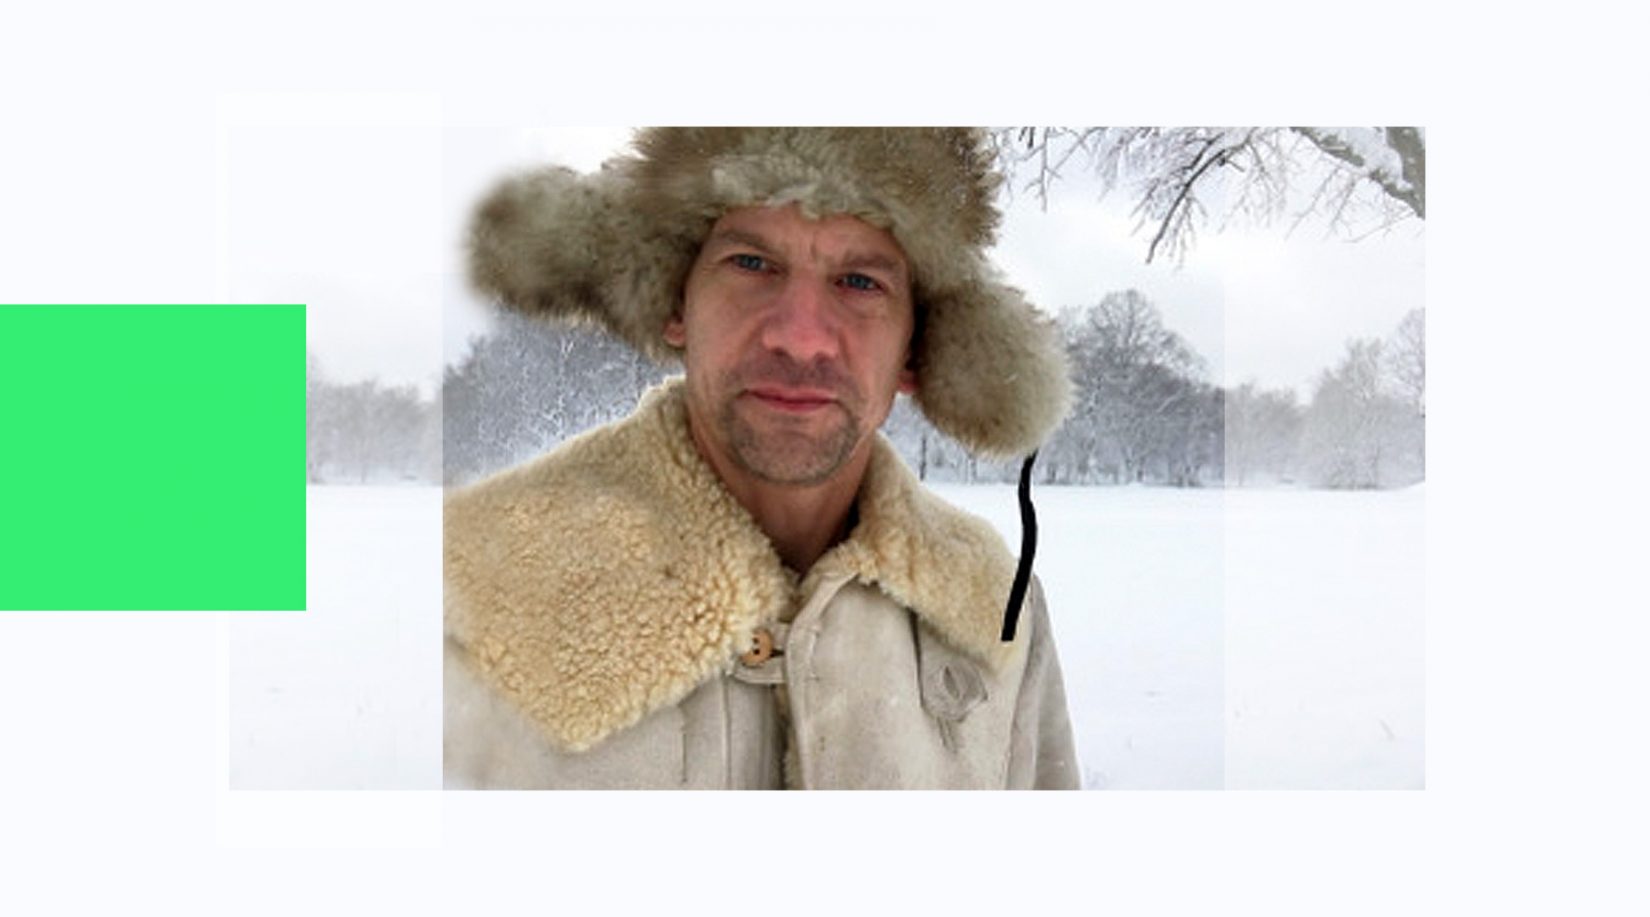 Portätt bild på konstnären Erik Alto. Konstnären står i ett vinterlandskap och tittar in i kameran. Han har en stor varm mössa på sig.